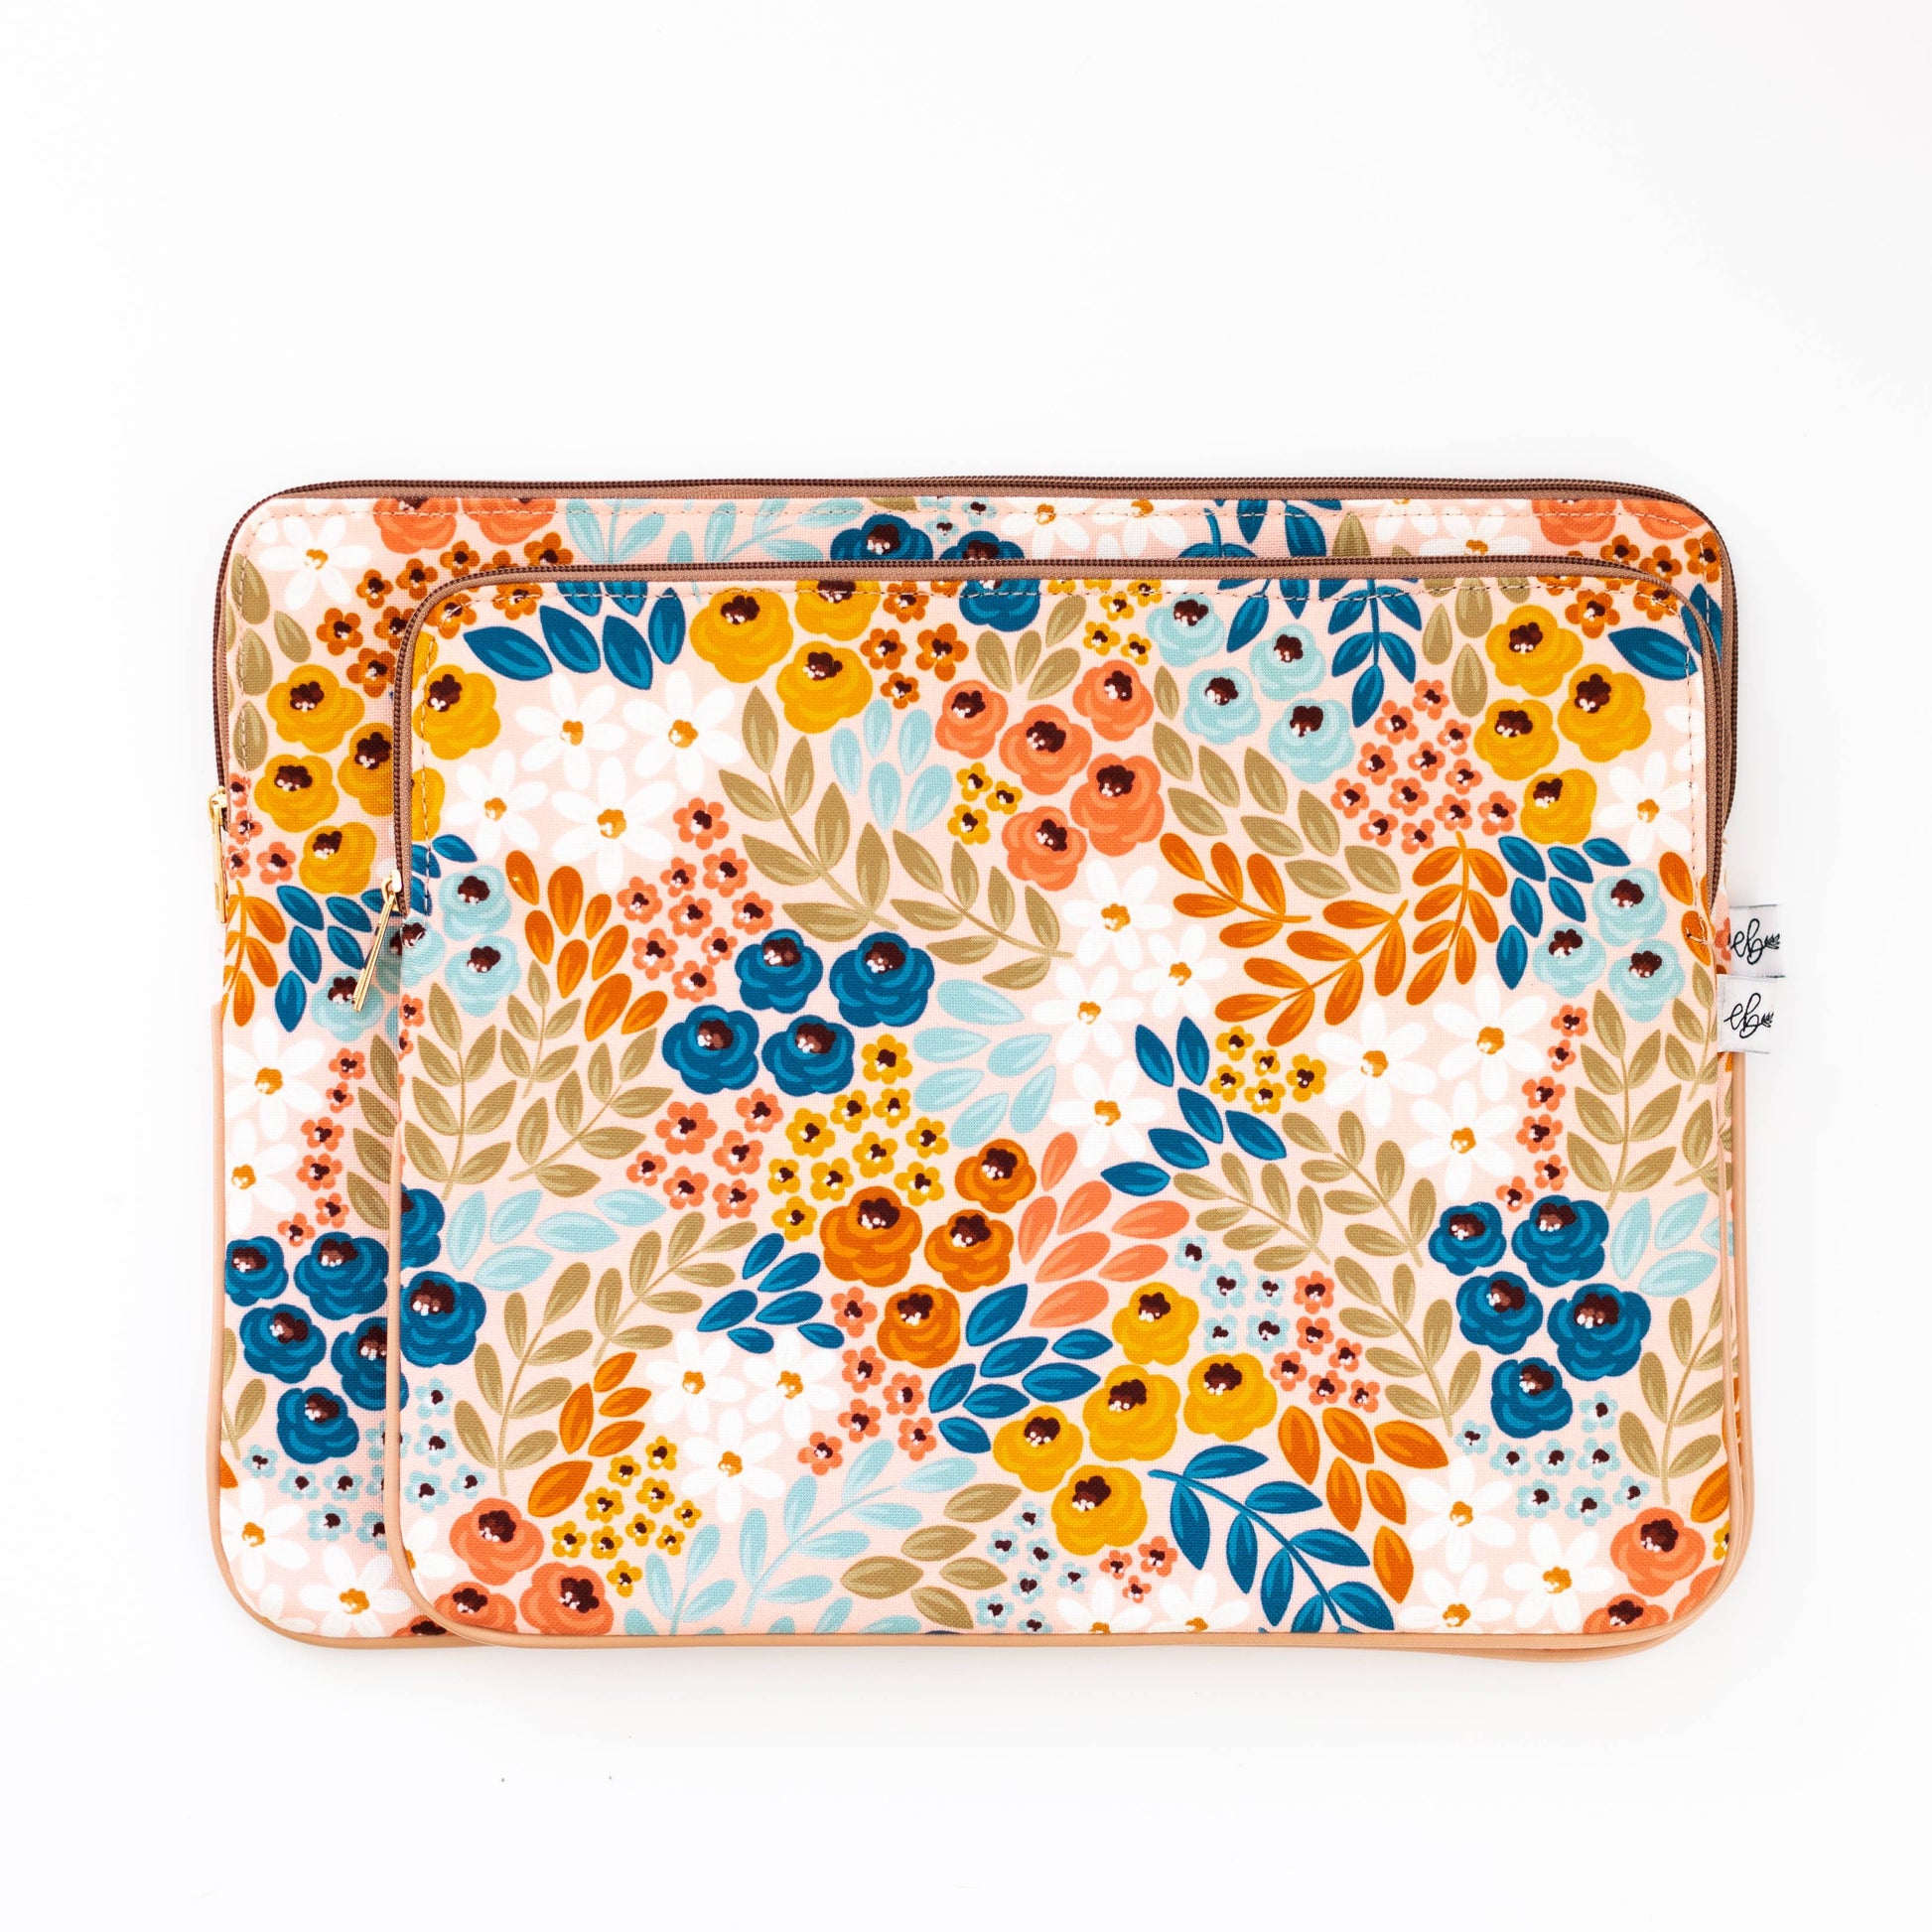 Honeysuckle Floral Laptop Sleeve: 15" Spring-Summer Elyse Breanne Design